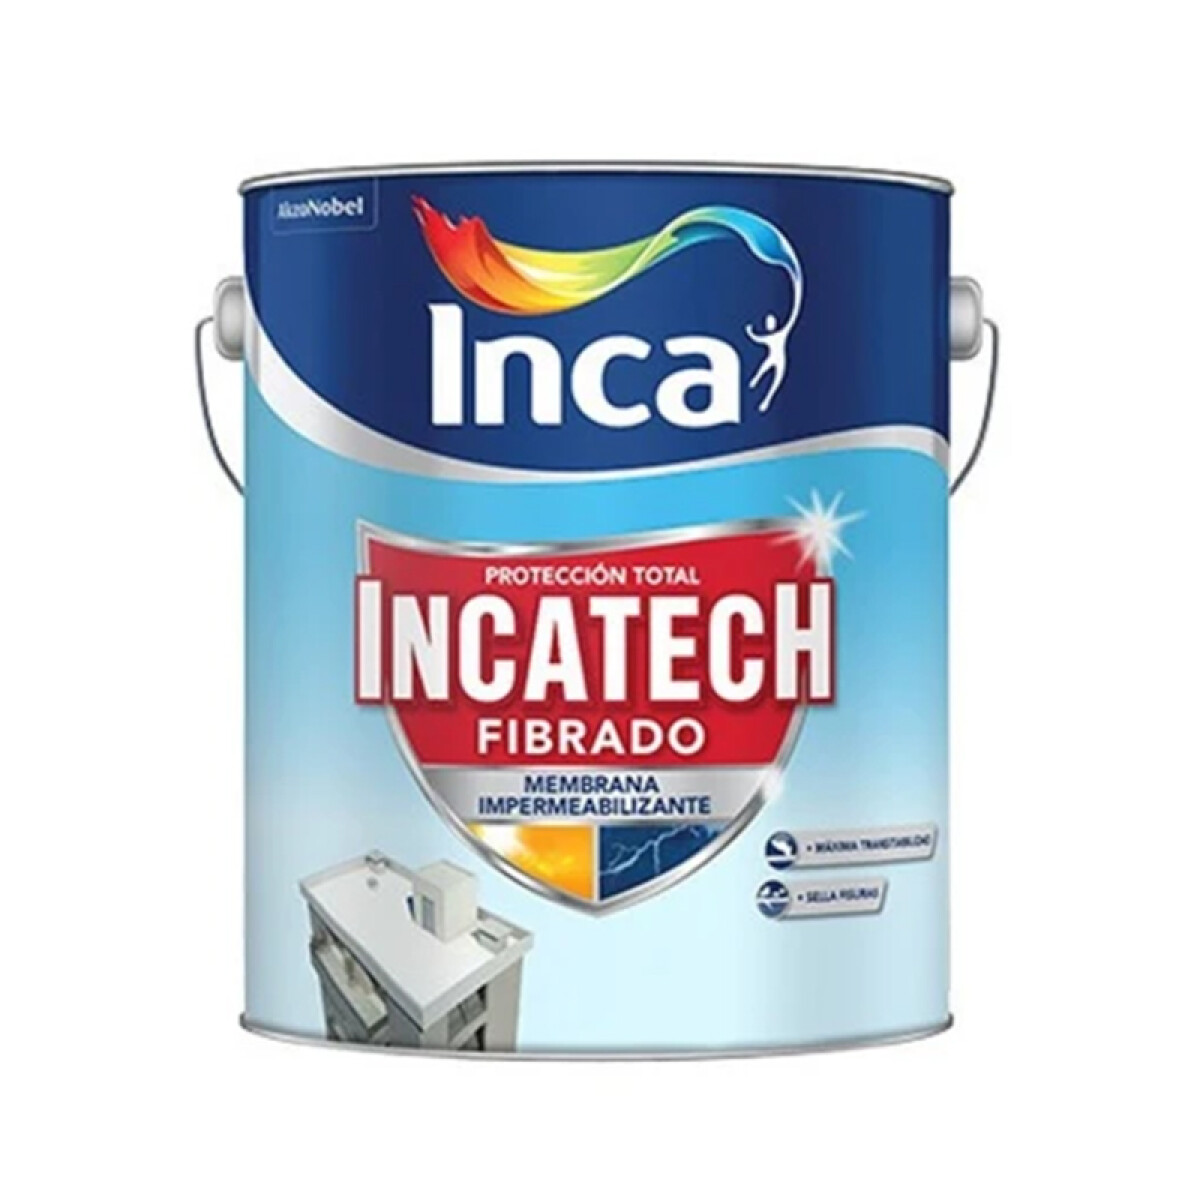 INCATECH FIBRADO 20L PROMO INCA 